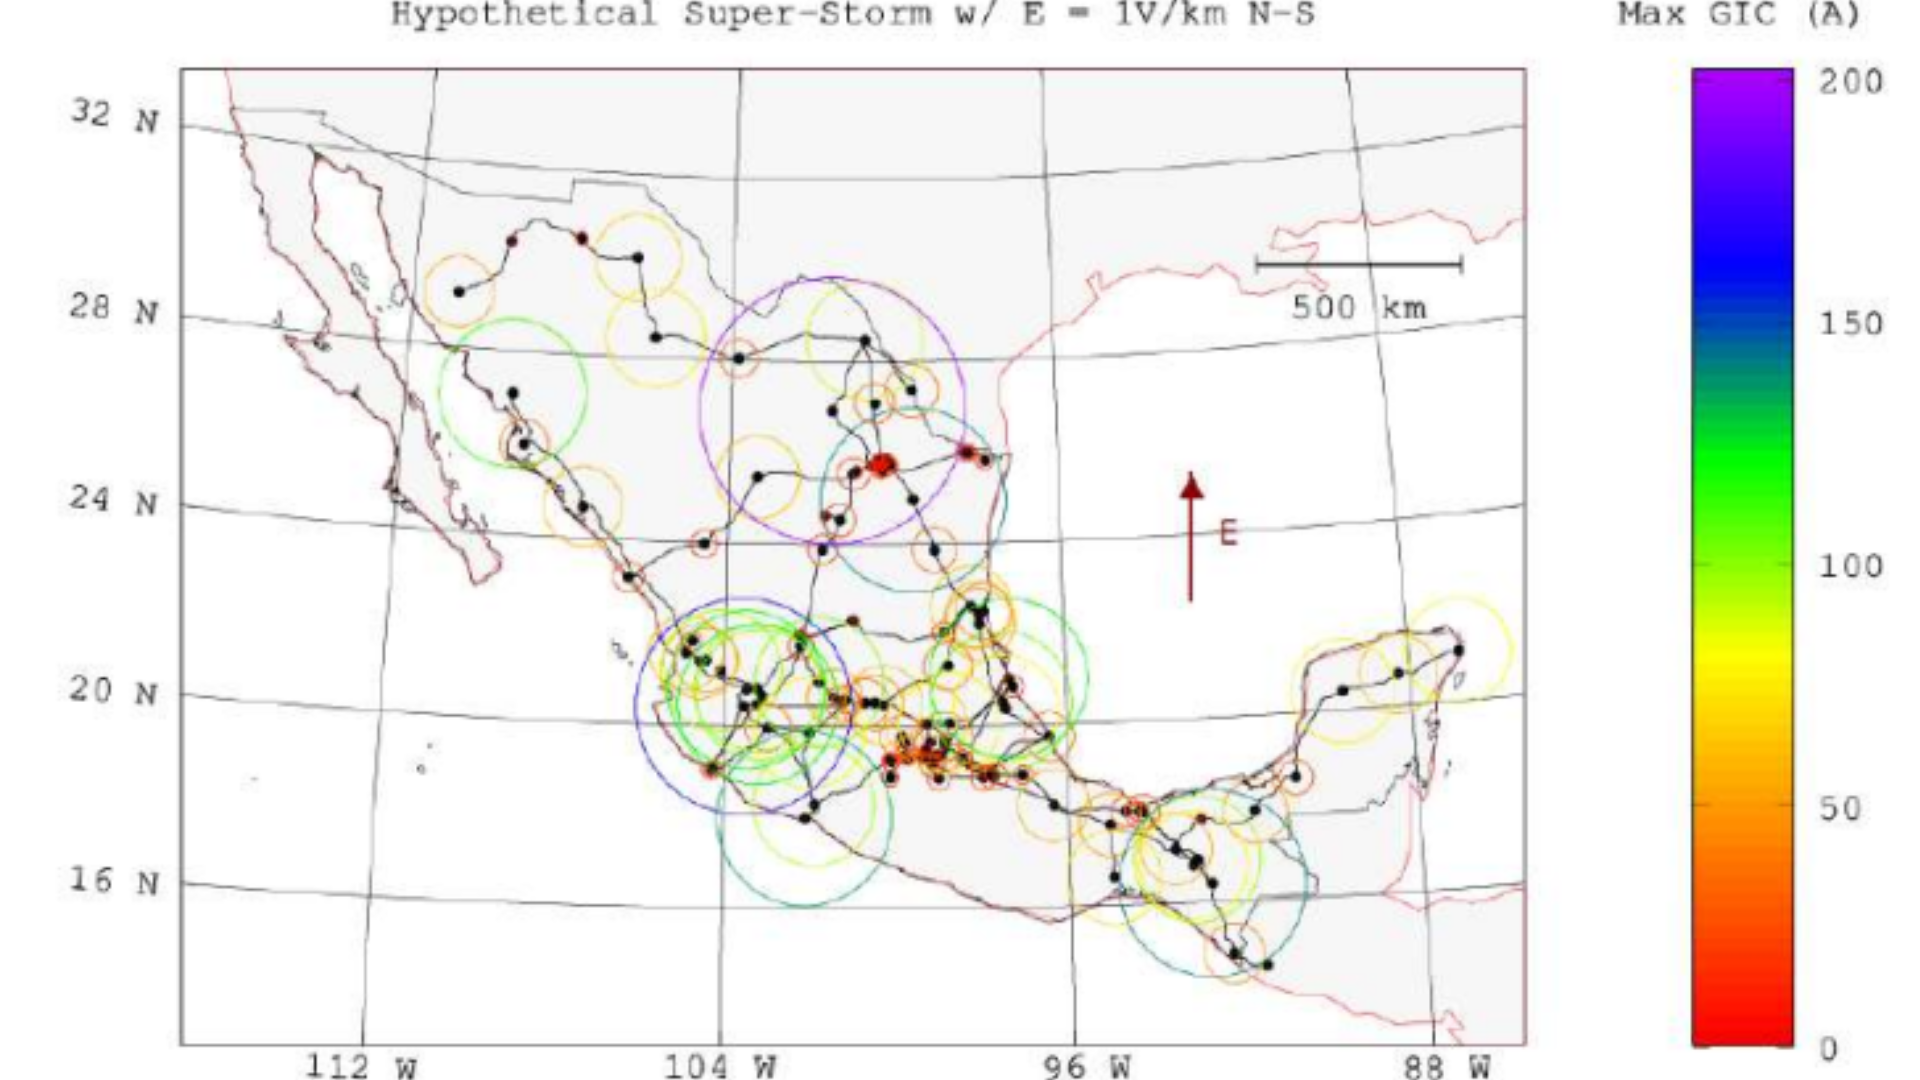 Mapa de modelo sobre los niveles de 
'corrientes geomagnéticamente inducidas' (GIC´s por su acrónimo en inglés)  en una super tormenta hipotética. (captura de pantalla de informe del LANCES y Instituto de Geofísica Unidad Michoacán de la mano con la UNAM)